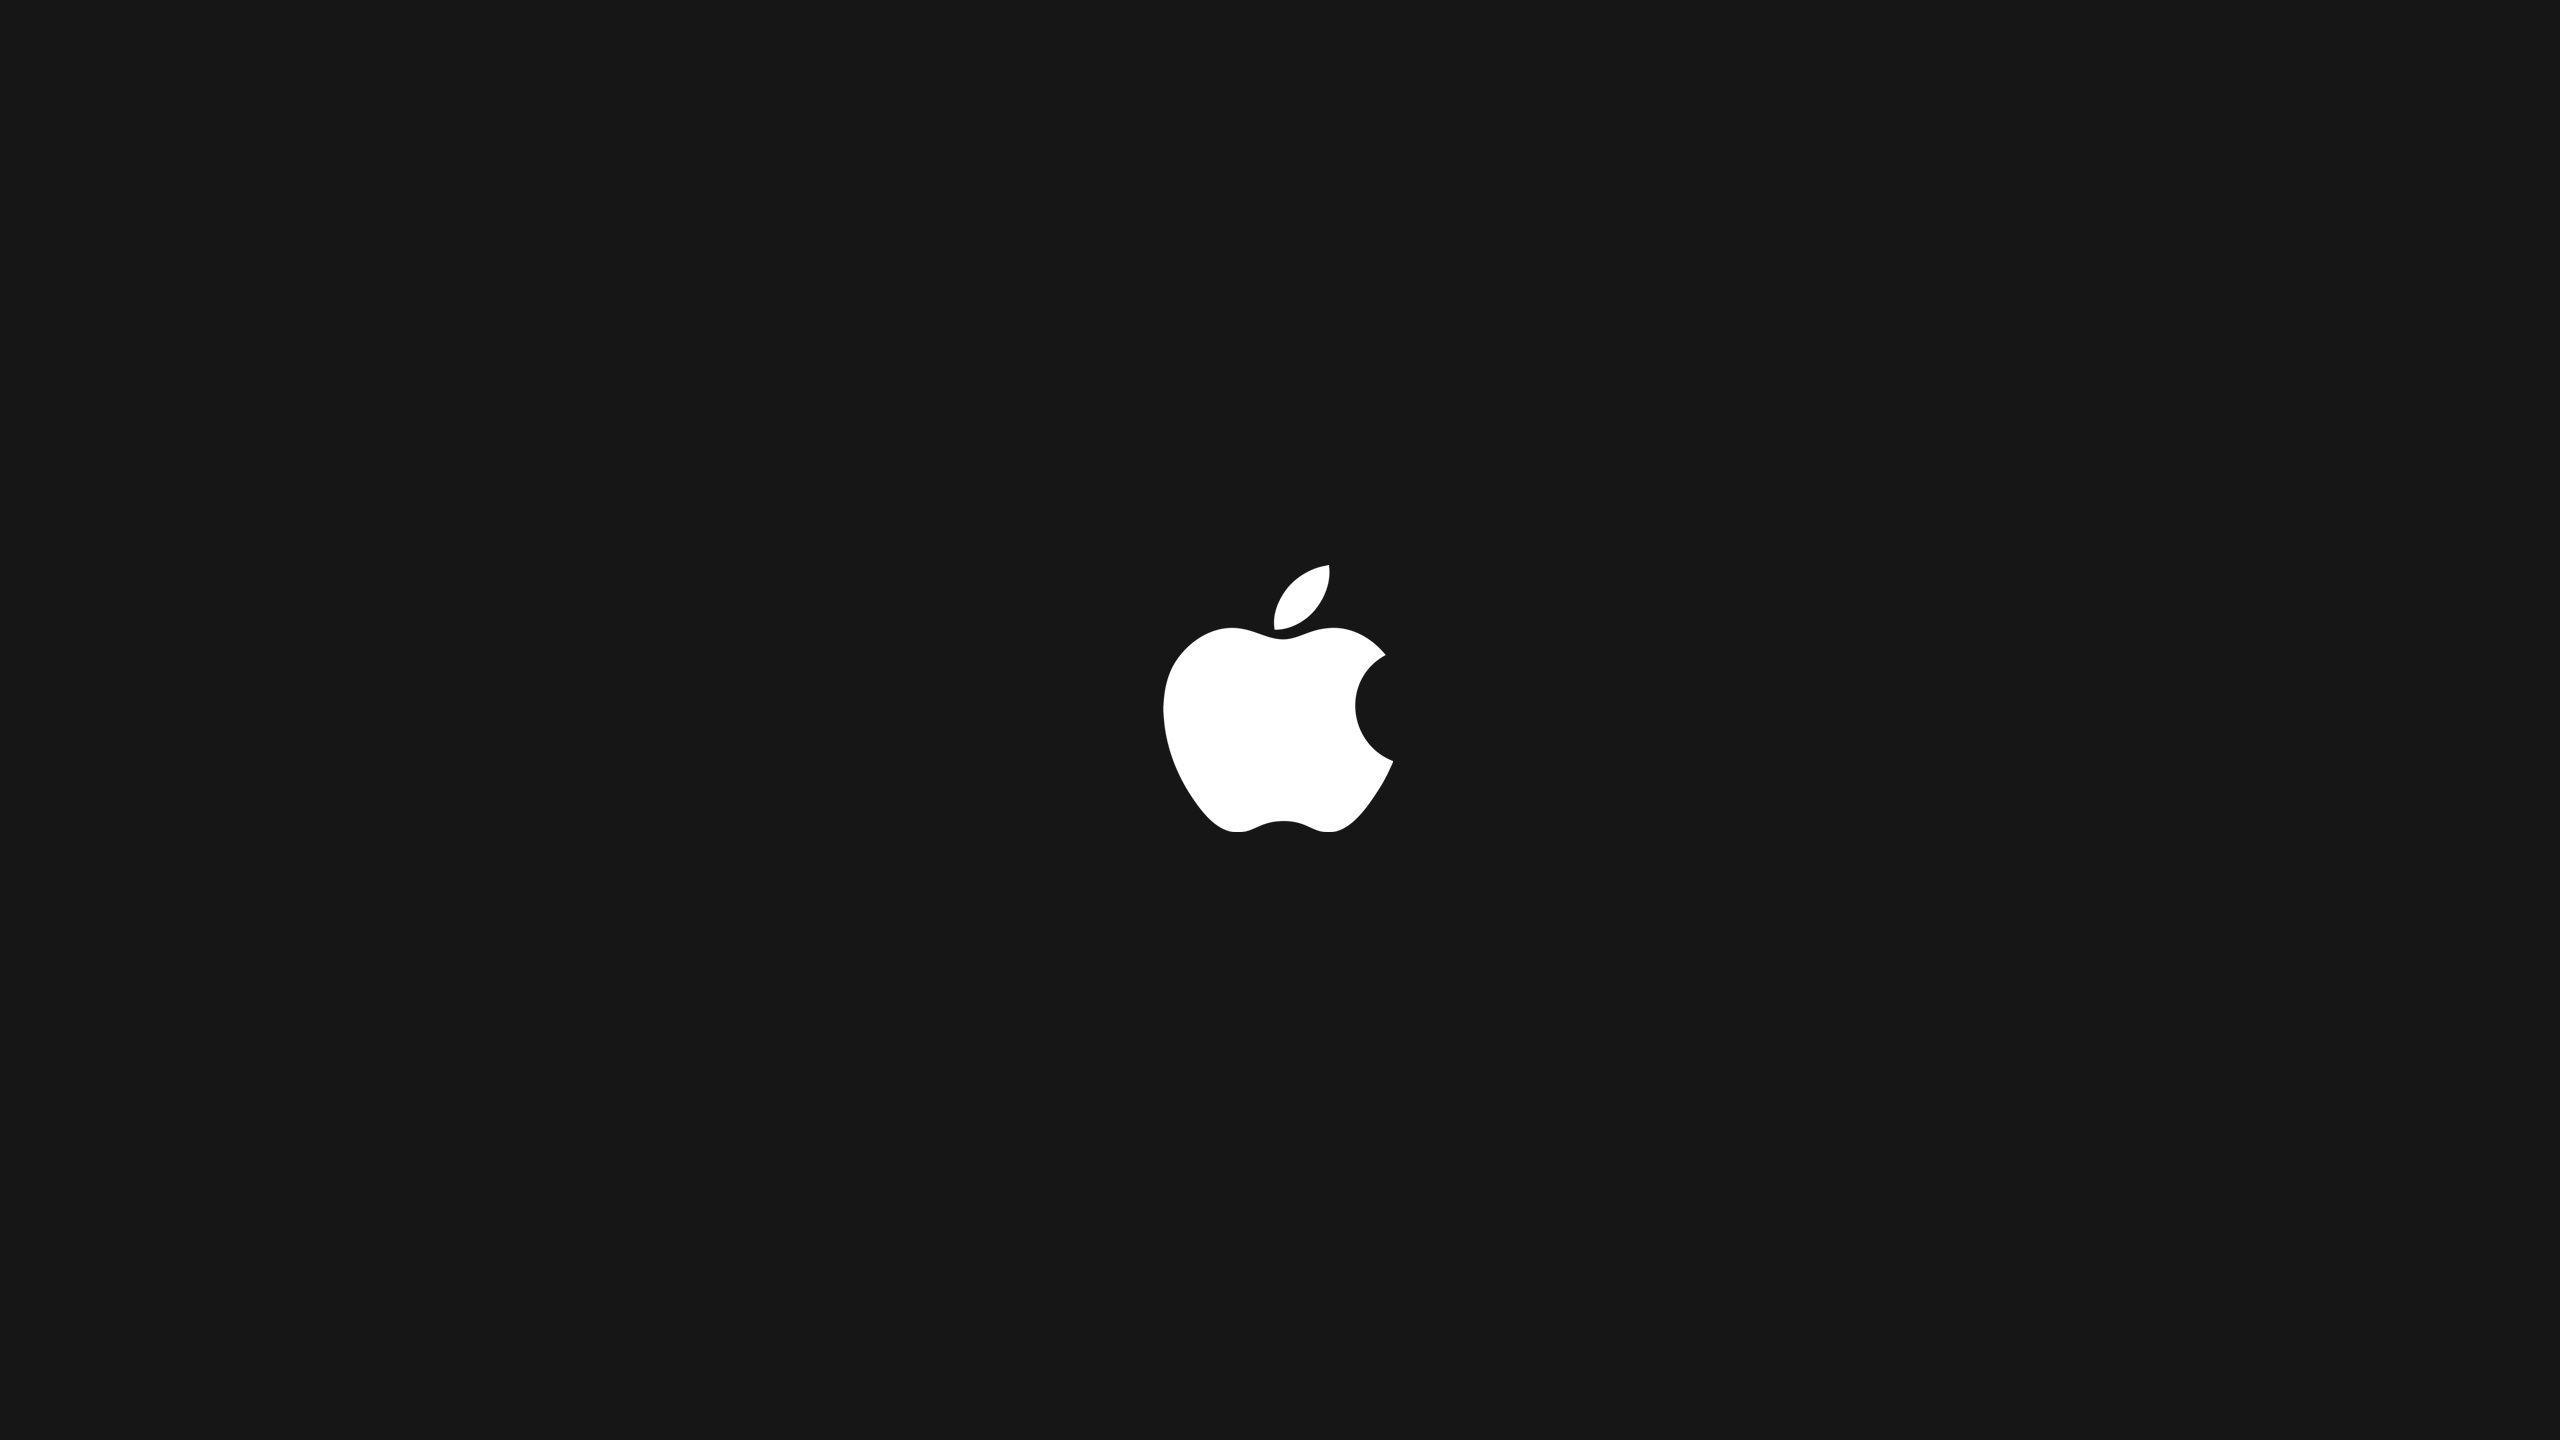 Logo Apple Mac: Hãy xem hình ảnh về logo Apple Mac để đắm mình trong vẻ đẹp đơn giản và thanh lịch của thiết kế này. Đây là biểu tượng của sự sang trọng và đẳng cấp trong ngành công nghệ. Hãy để mắt thấy và trái tim cảm nhận, bạn sẽ không thất vọng.